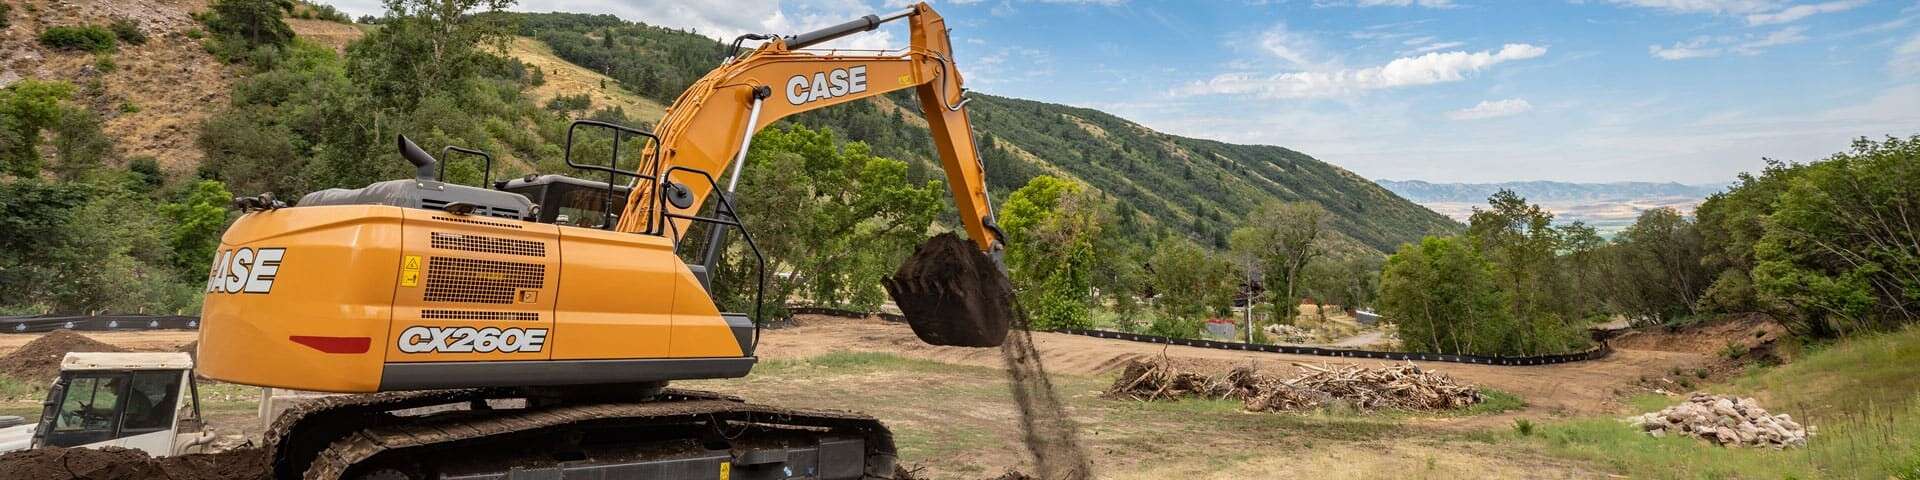 E-Series-CX260E-Excavator-Digging